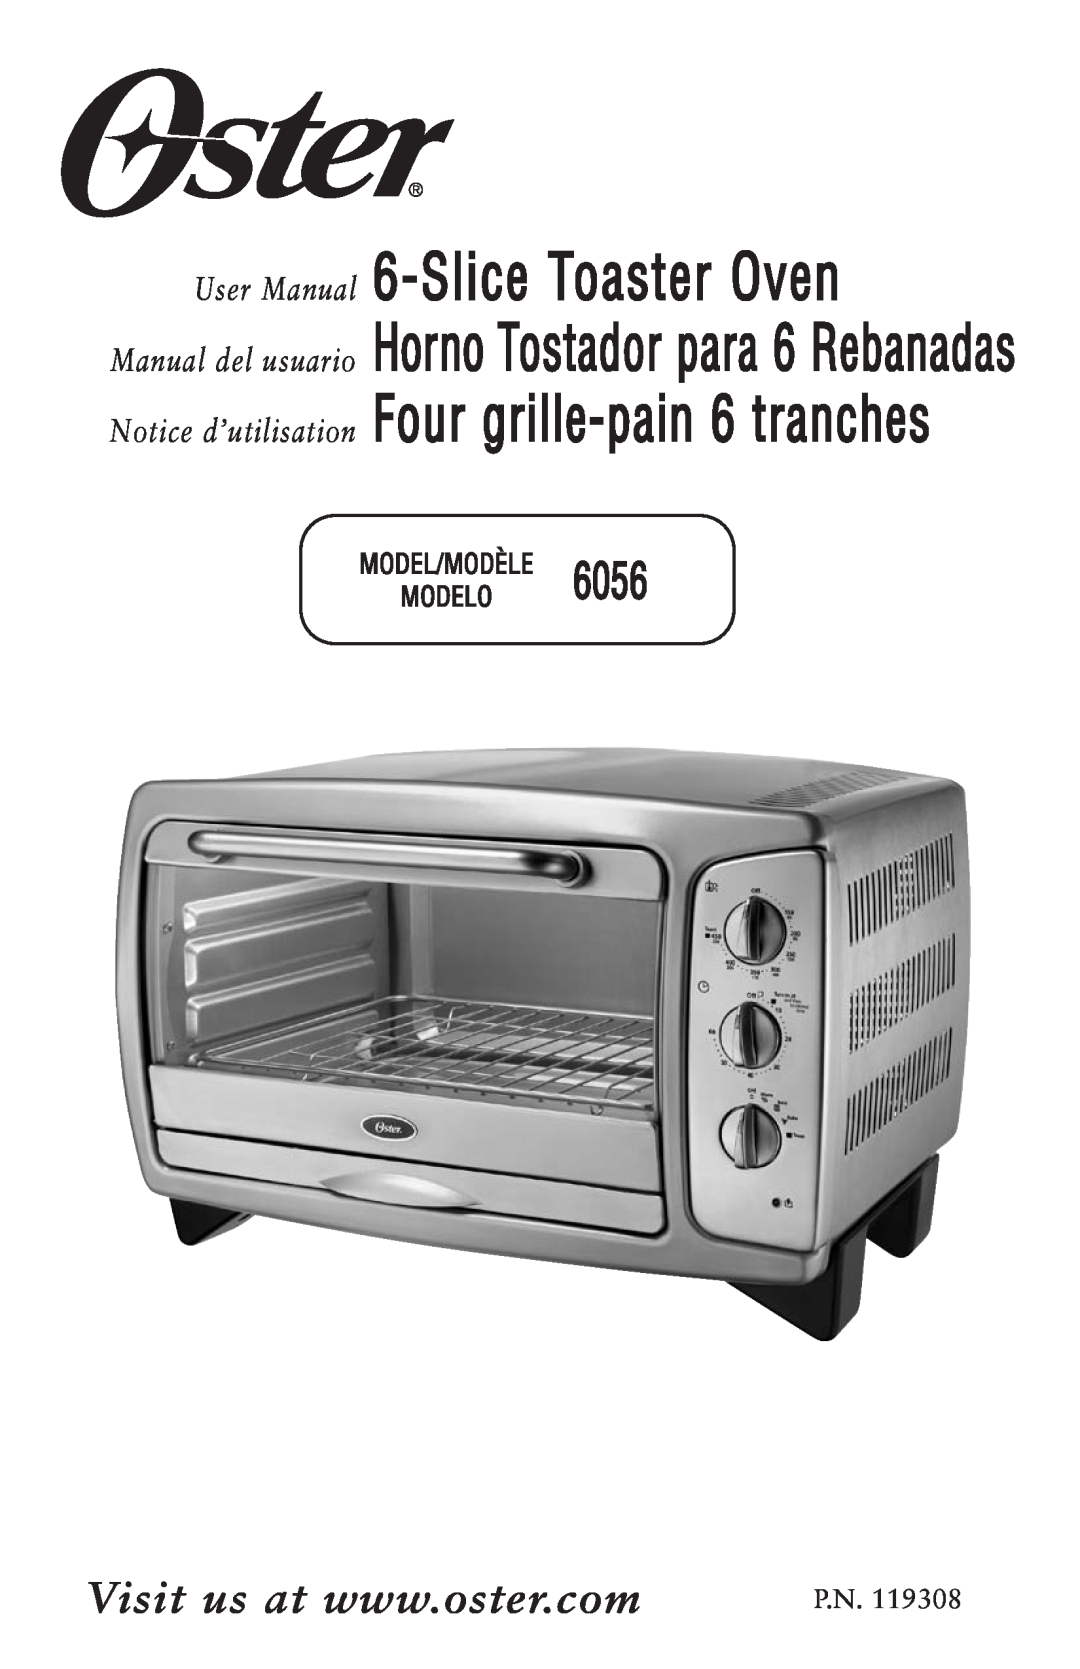 Oster 119308, 6056 user manual Model/Modèle Modelo, SliceToaster Oven, Notice d’utilisation 